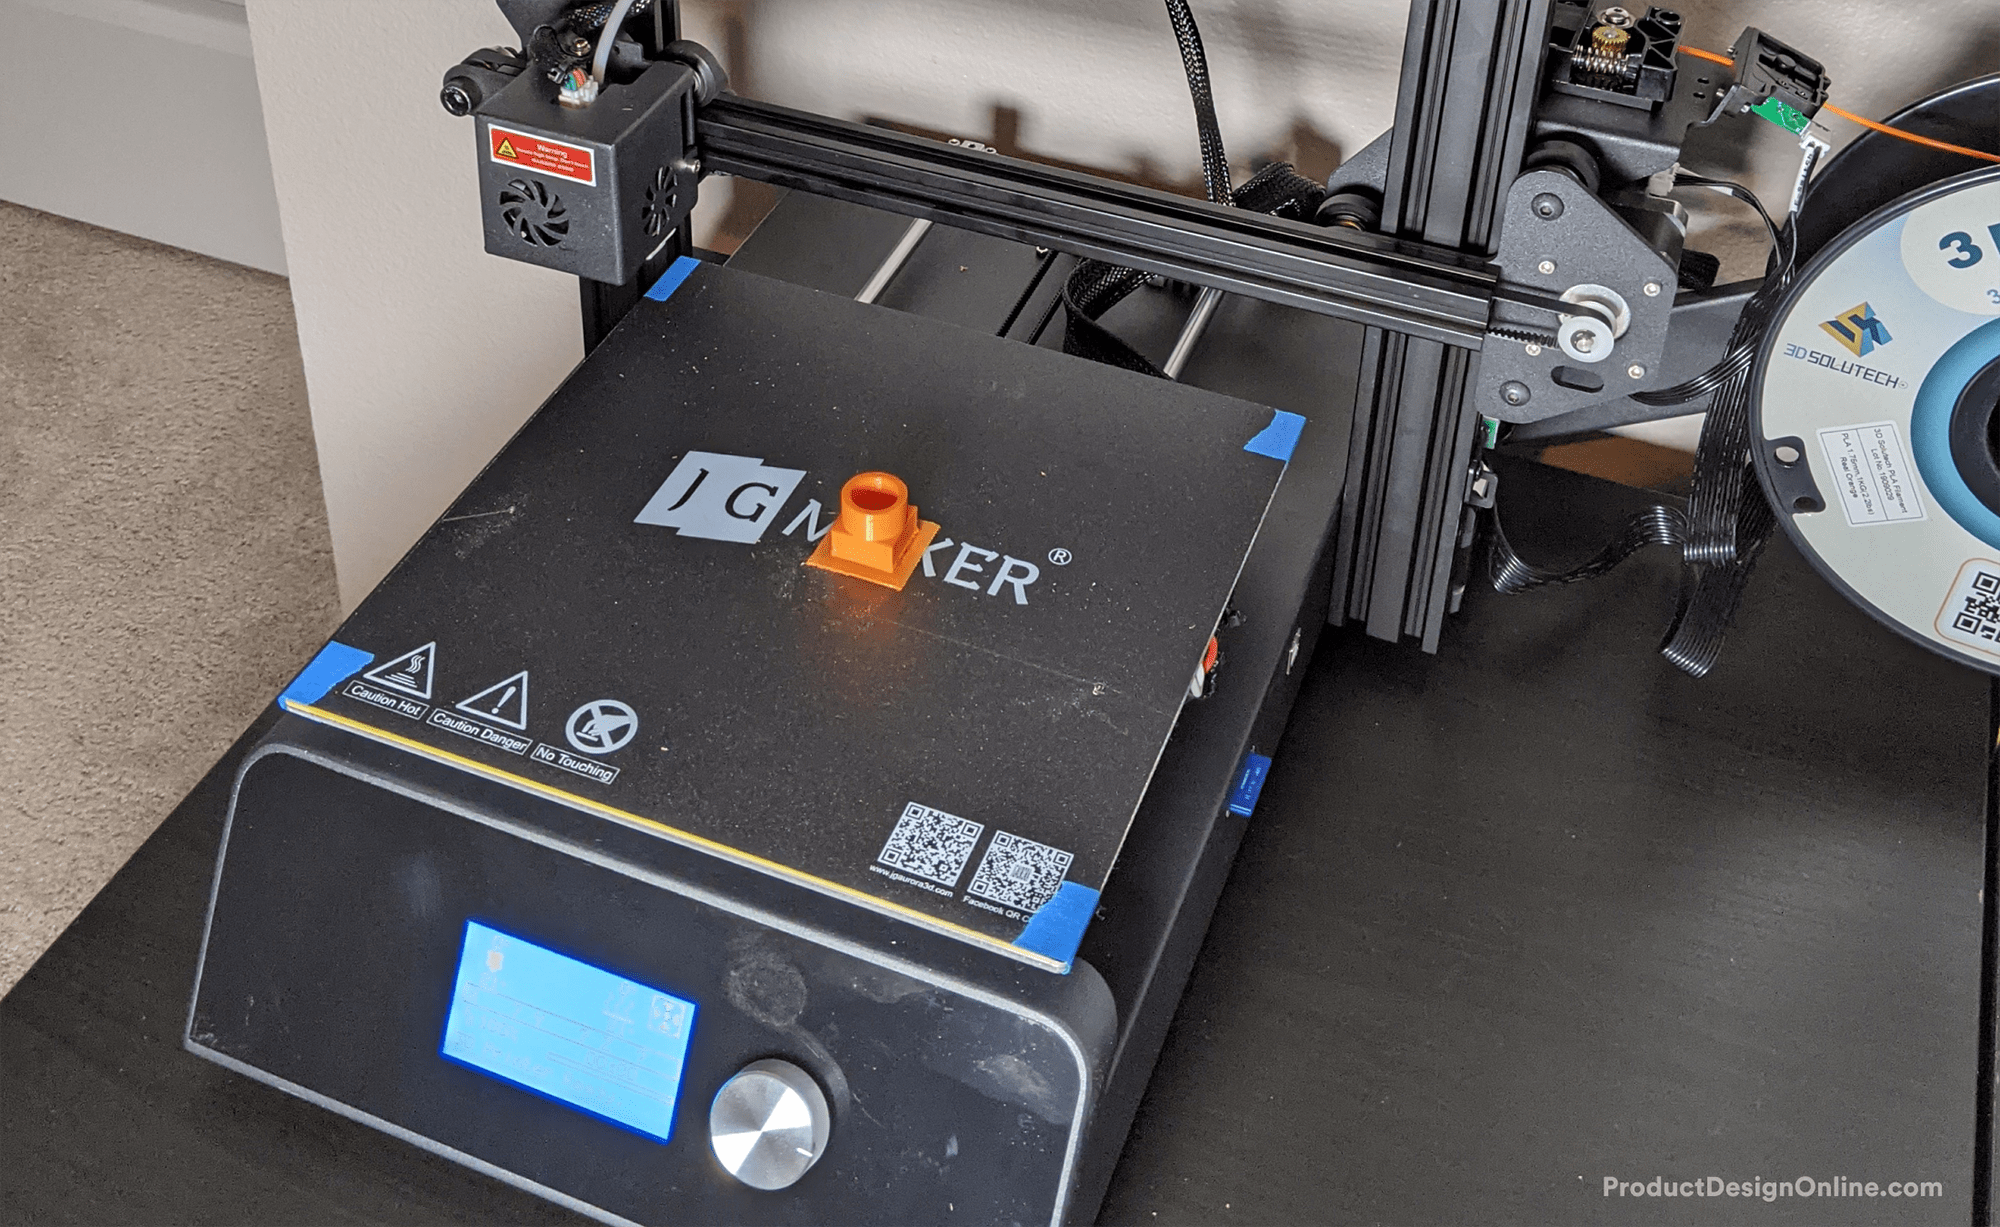 Printer JGMaker Magic Printer - Product Design Online